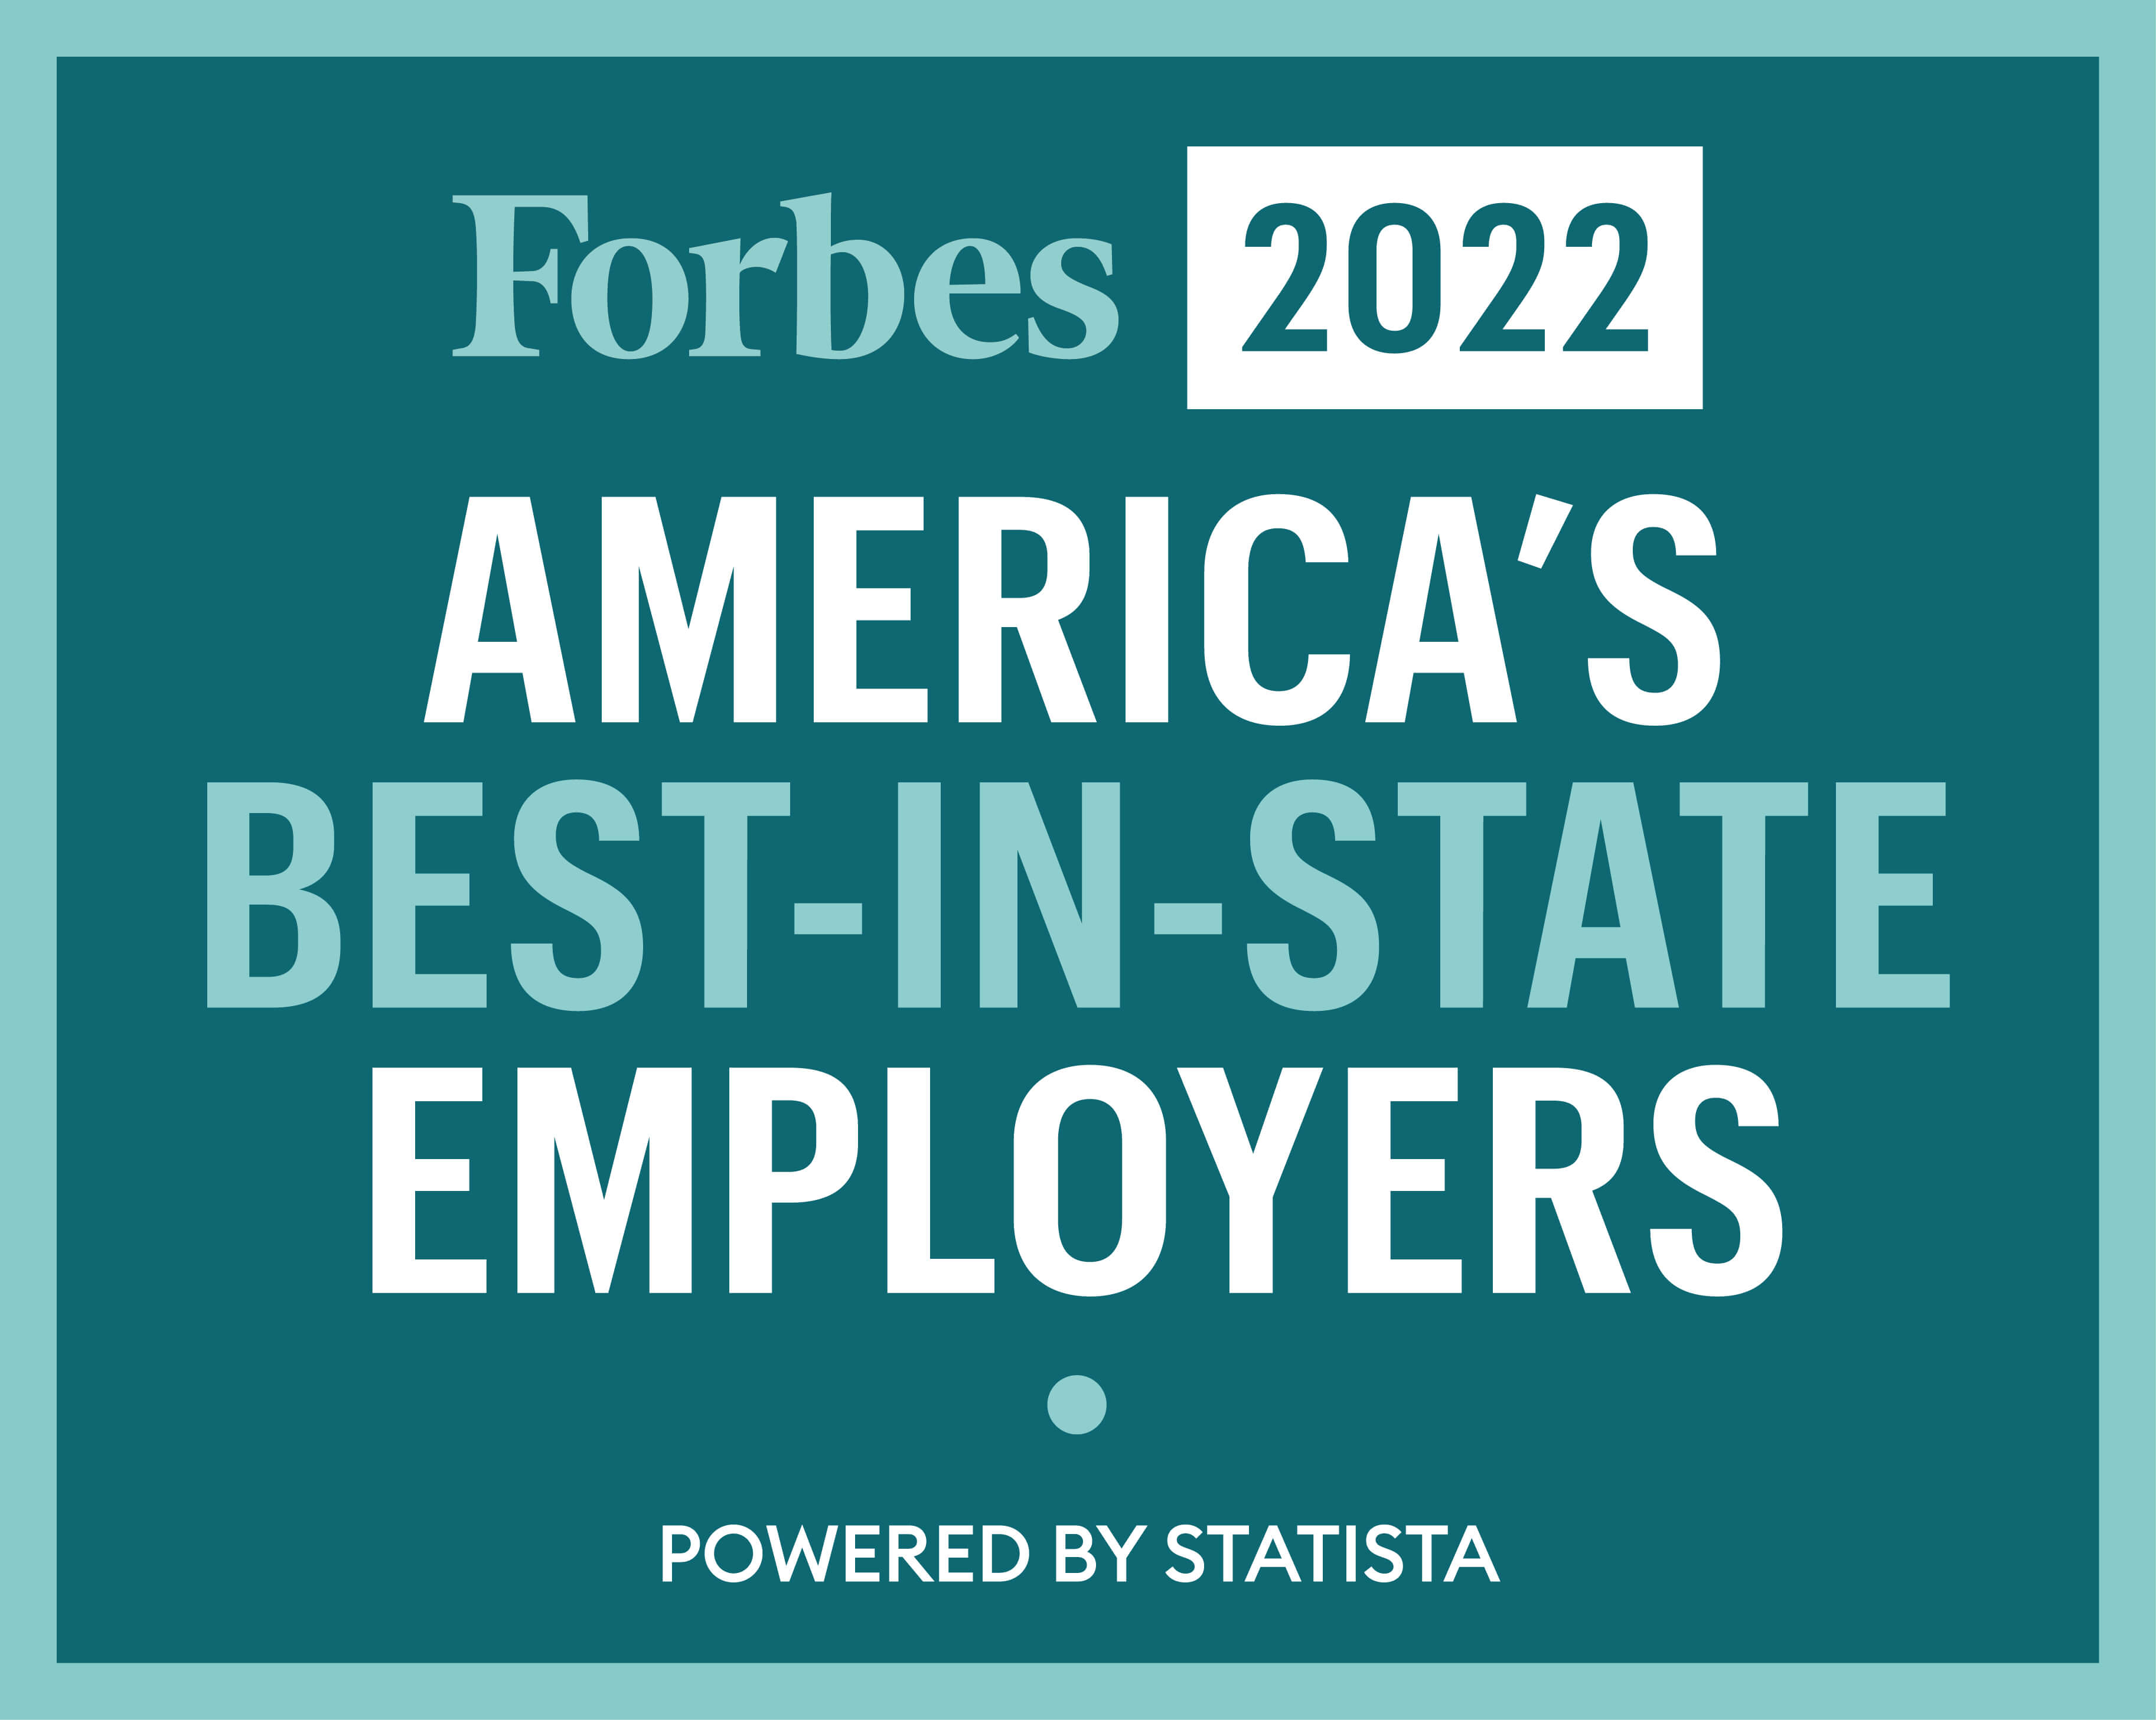 巴塞特医疗网络被《福布斯》评为2022年全美最佳雇主